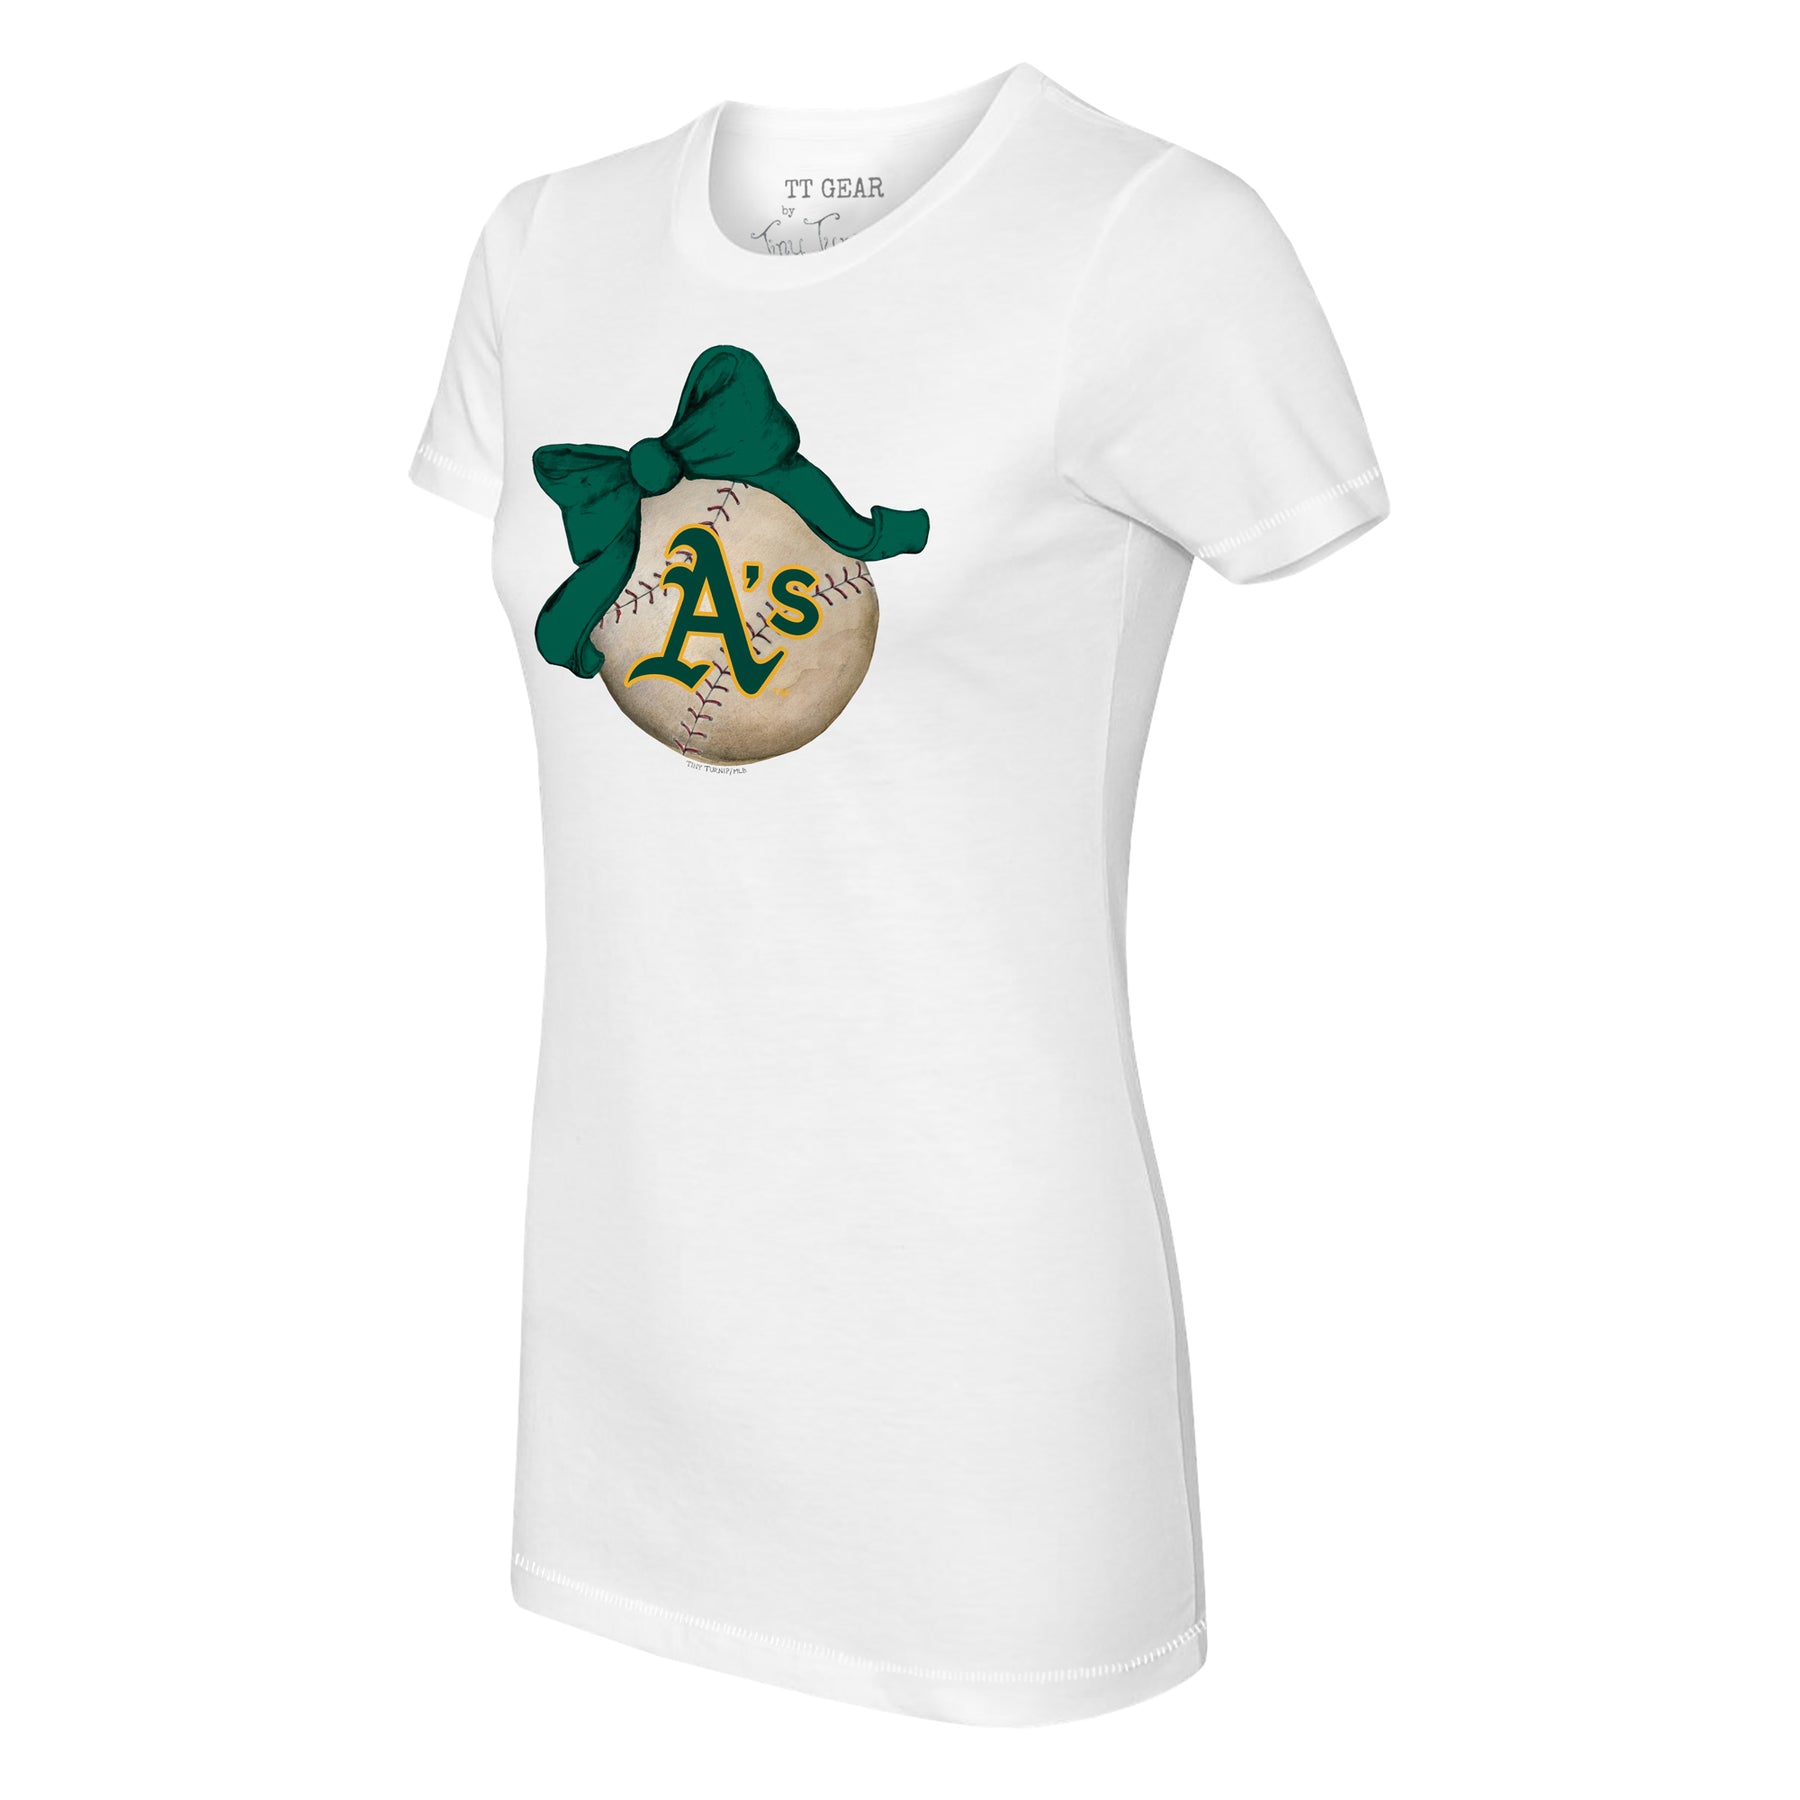 Oakland Athletics Baseball LOVE Tee Shirt Tiny Turnip